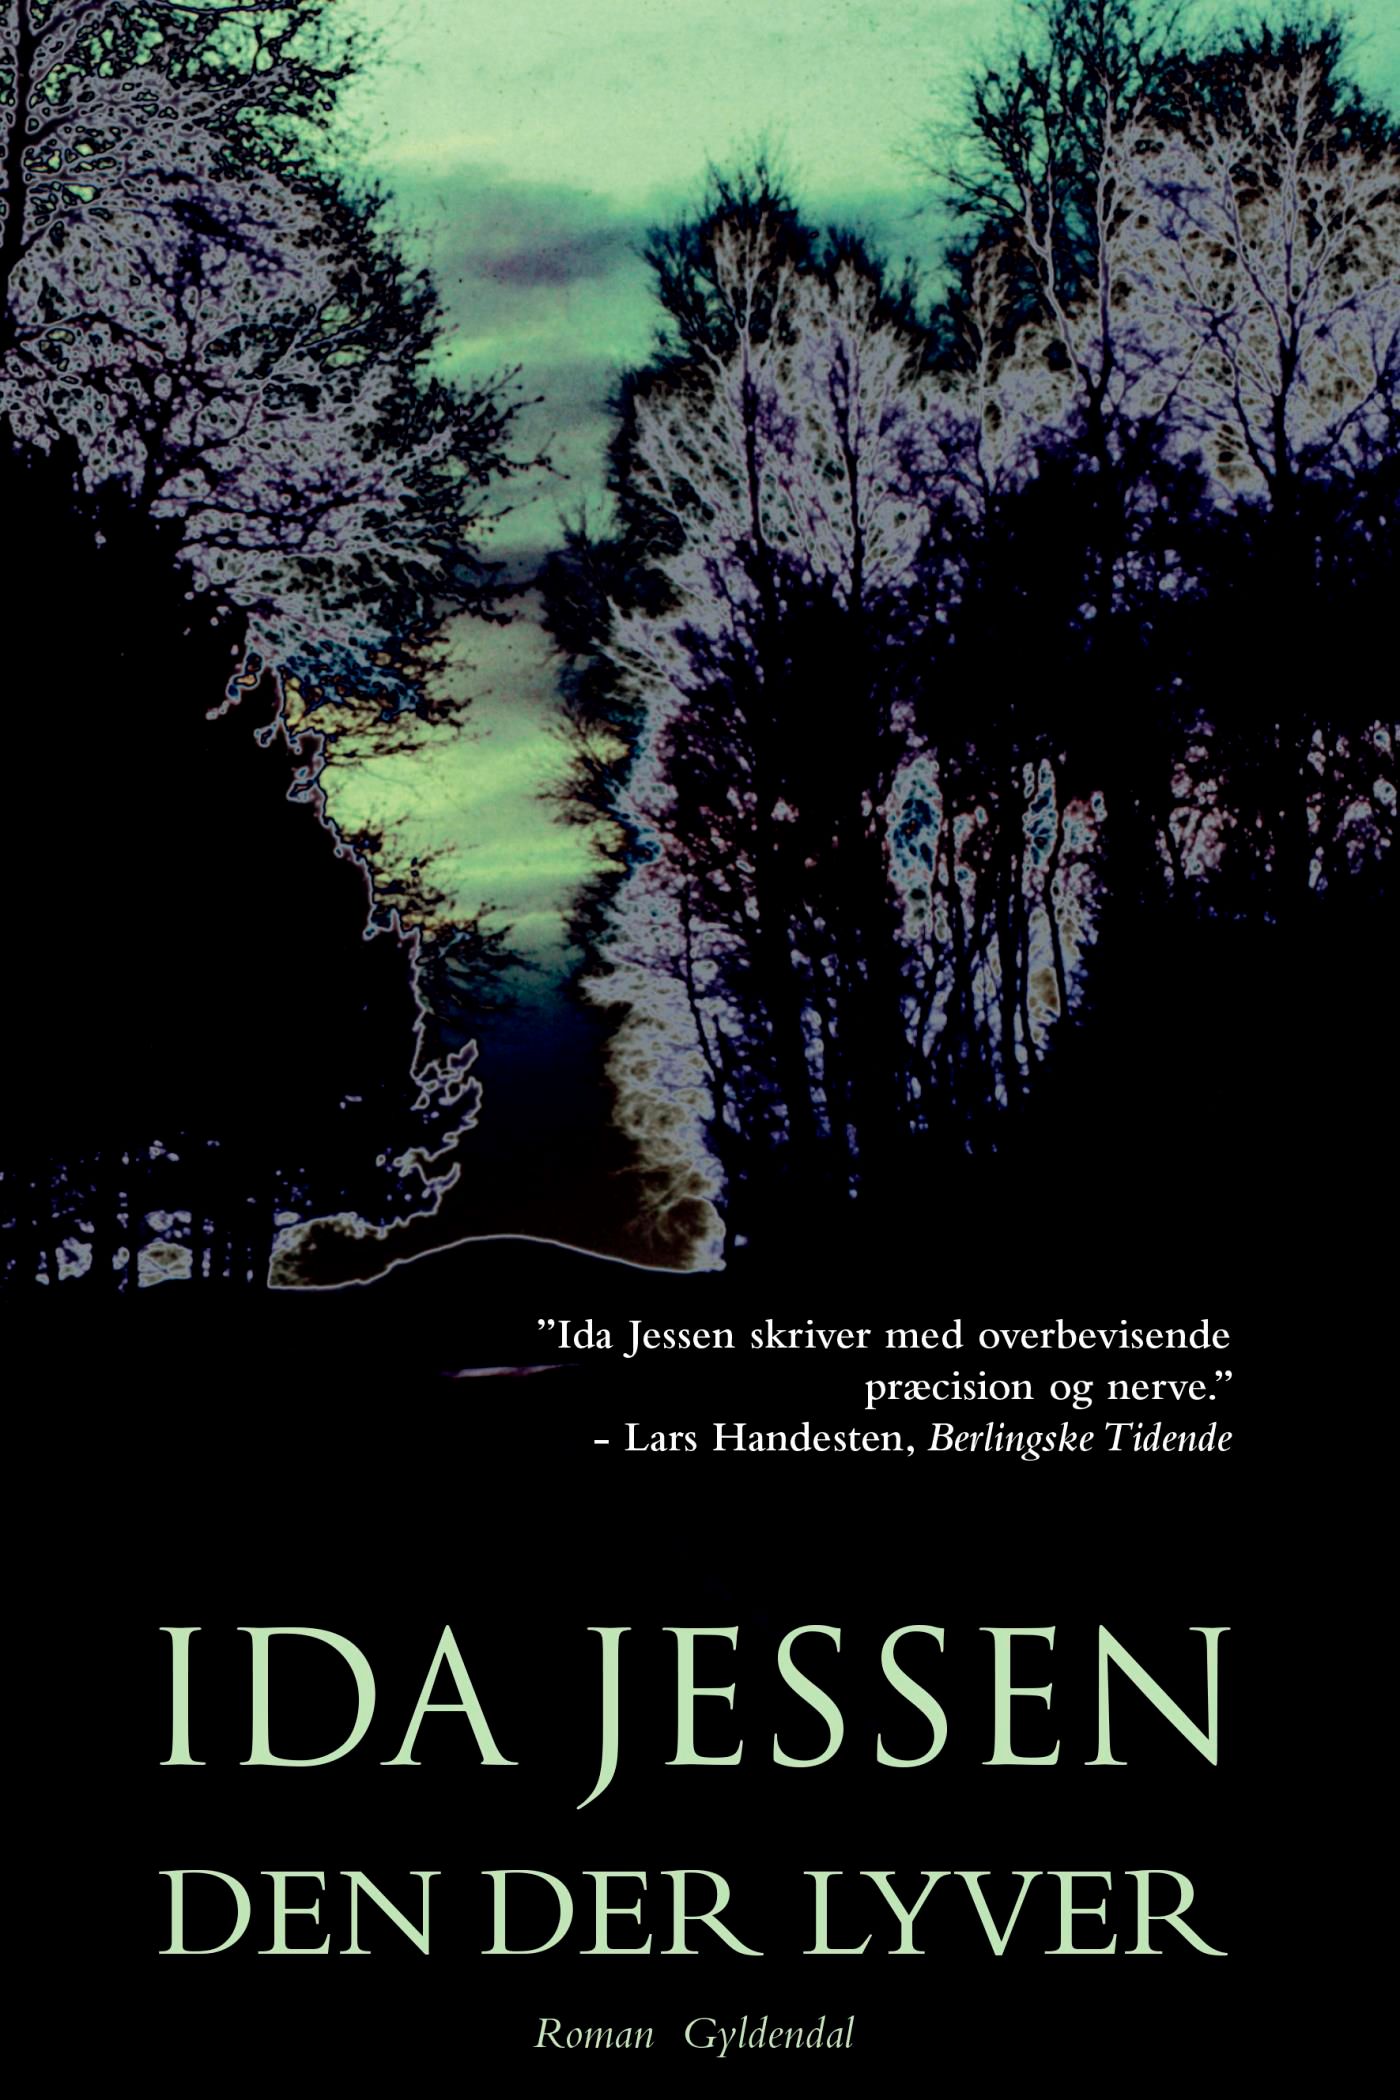 Den der lyver, e-bog af Ida Jessen